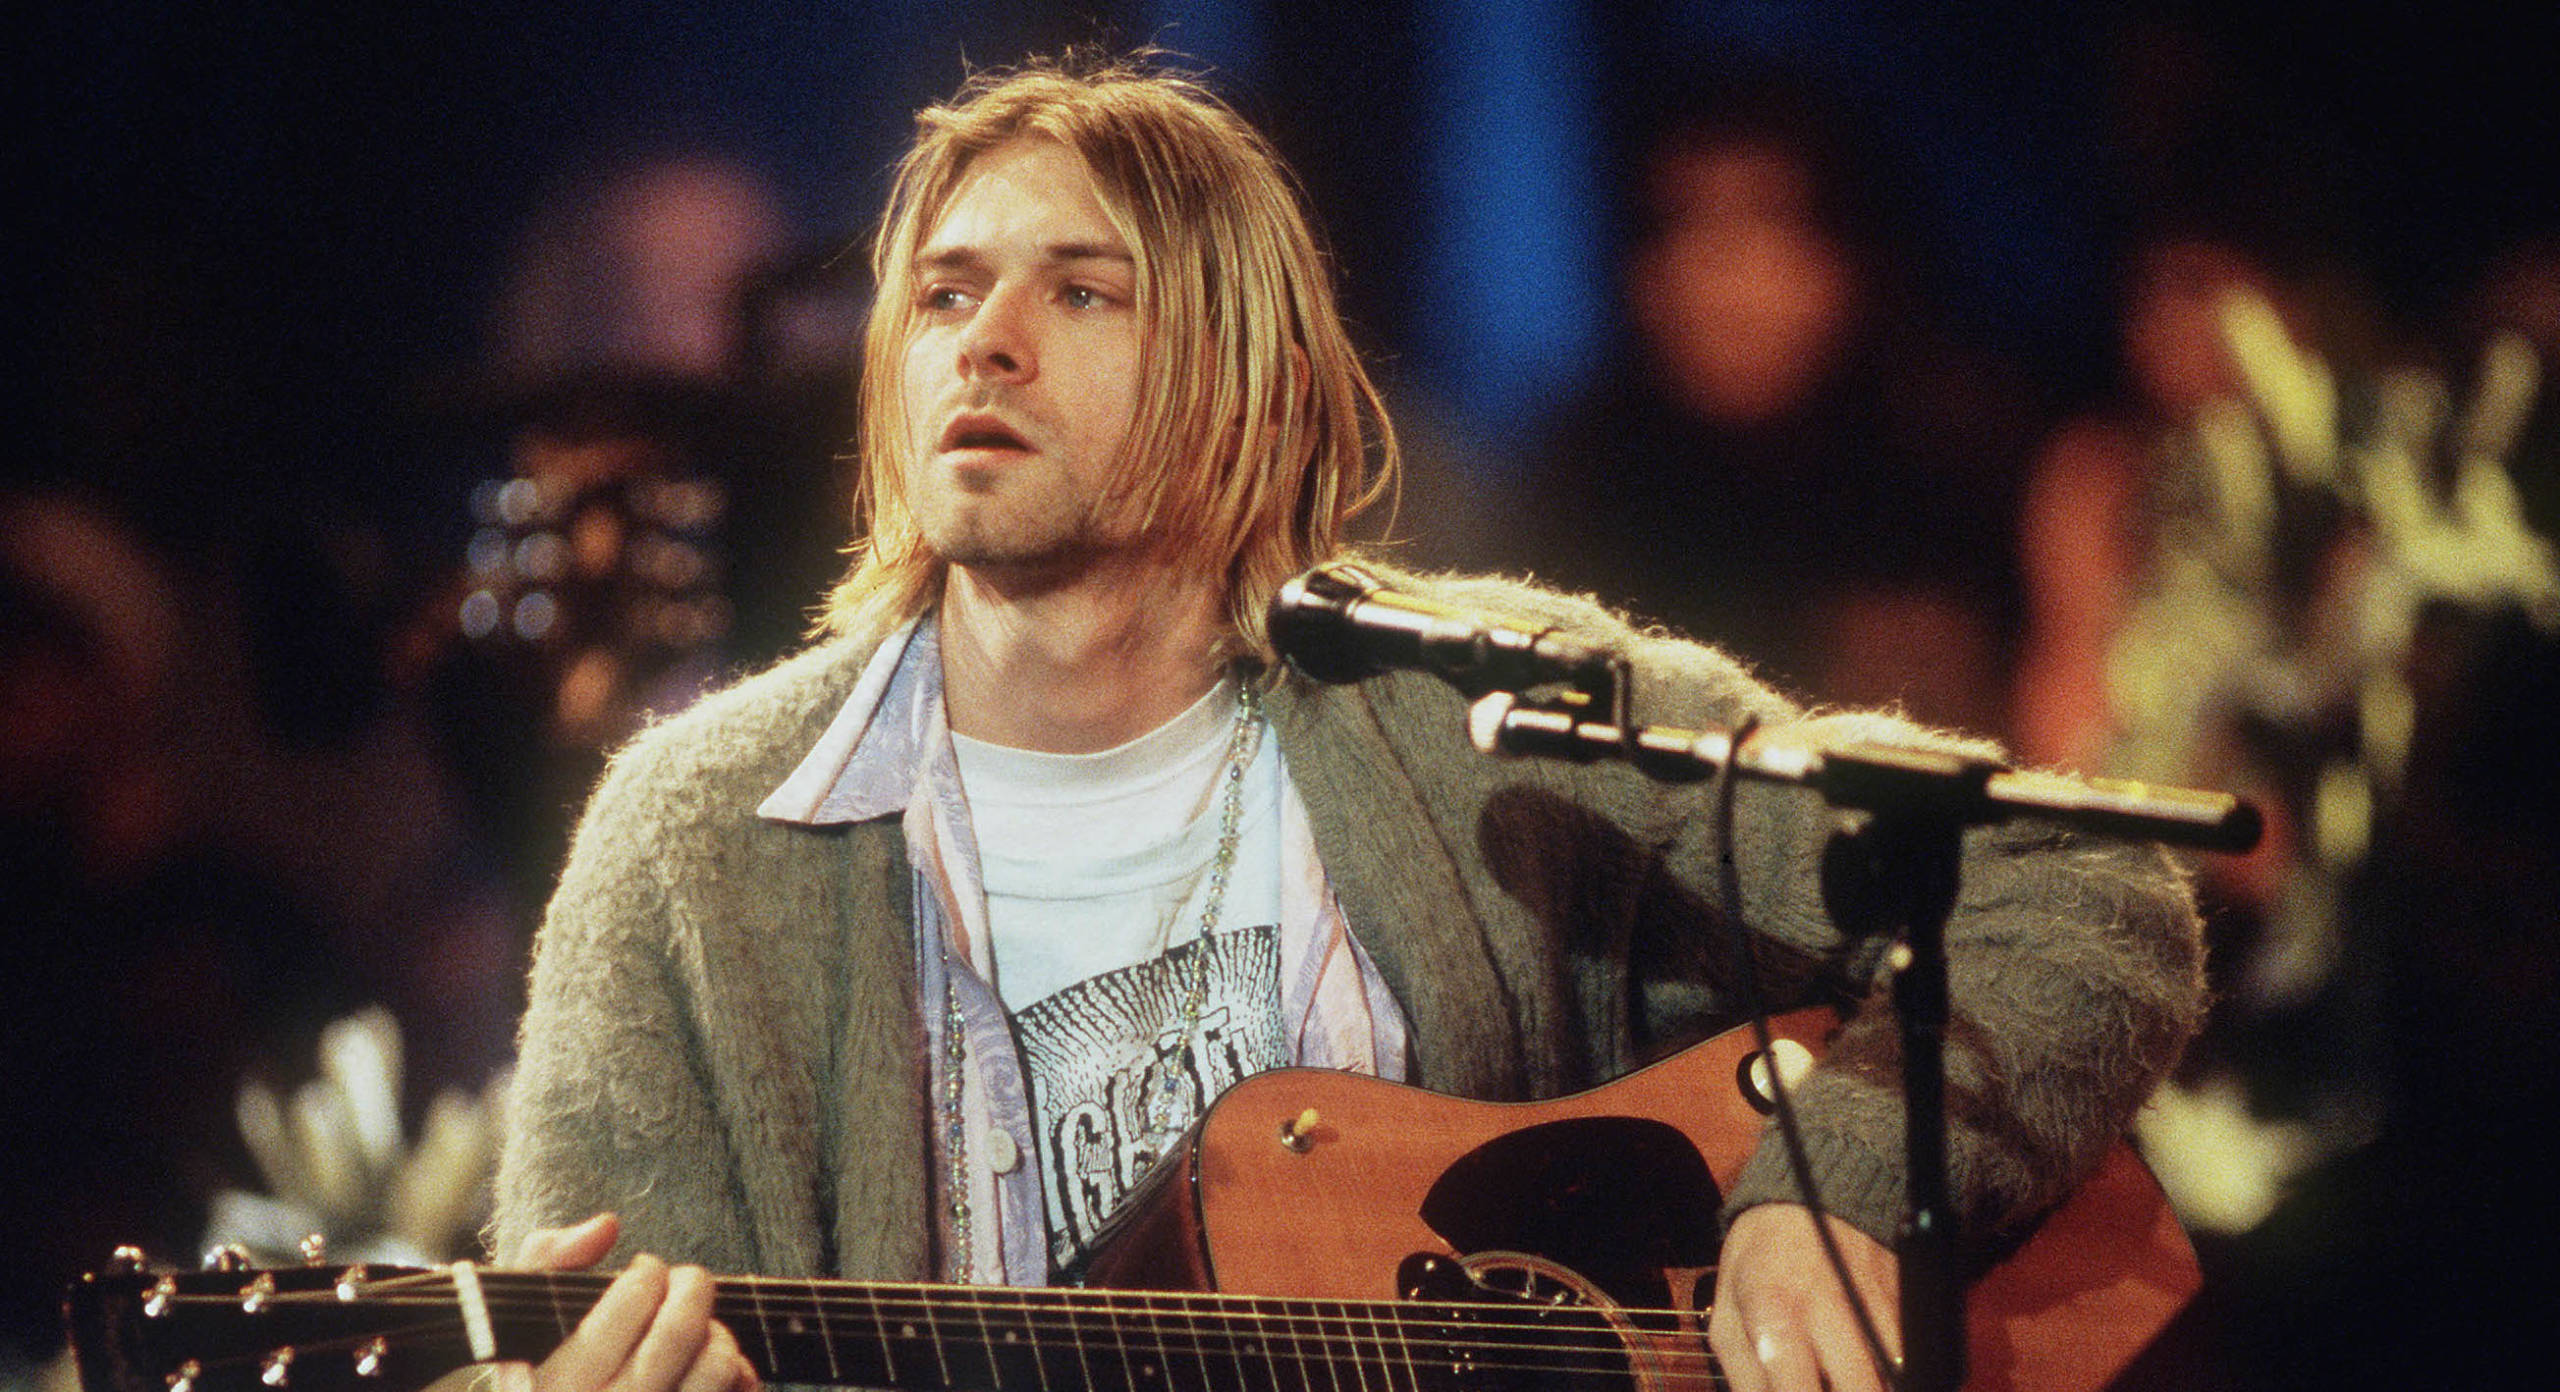 Kurt Cobain gelang mit Nirvana einer der besten Schluss-Songs auf einem Album überhaupt